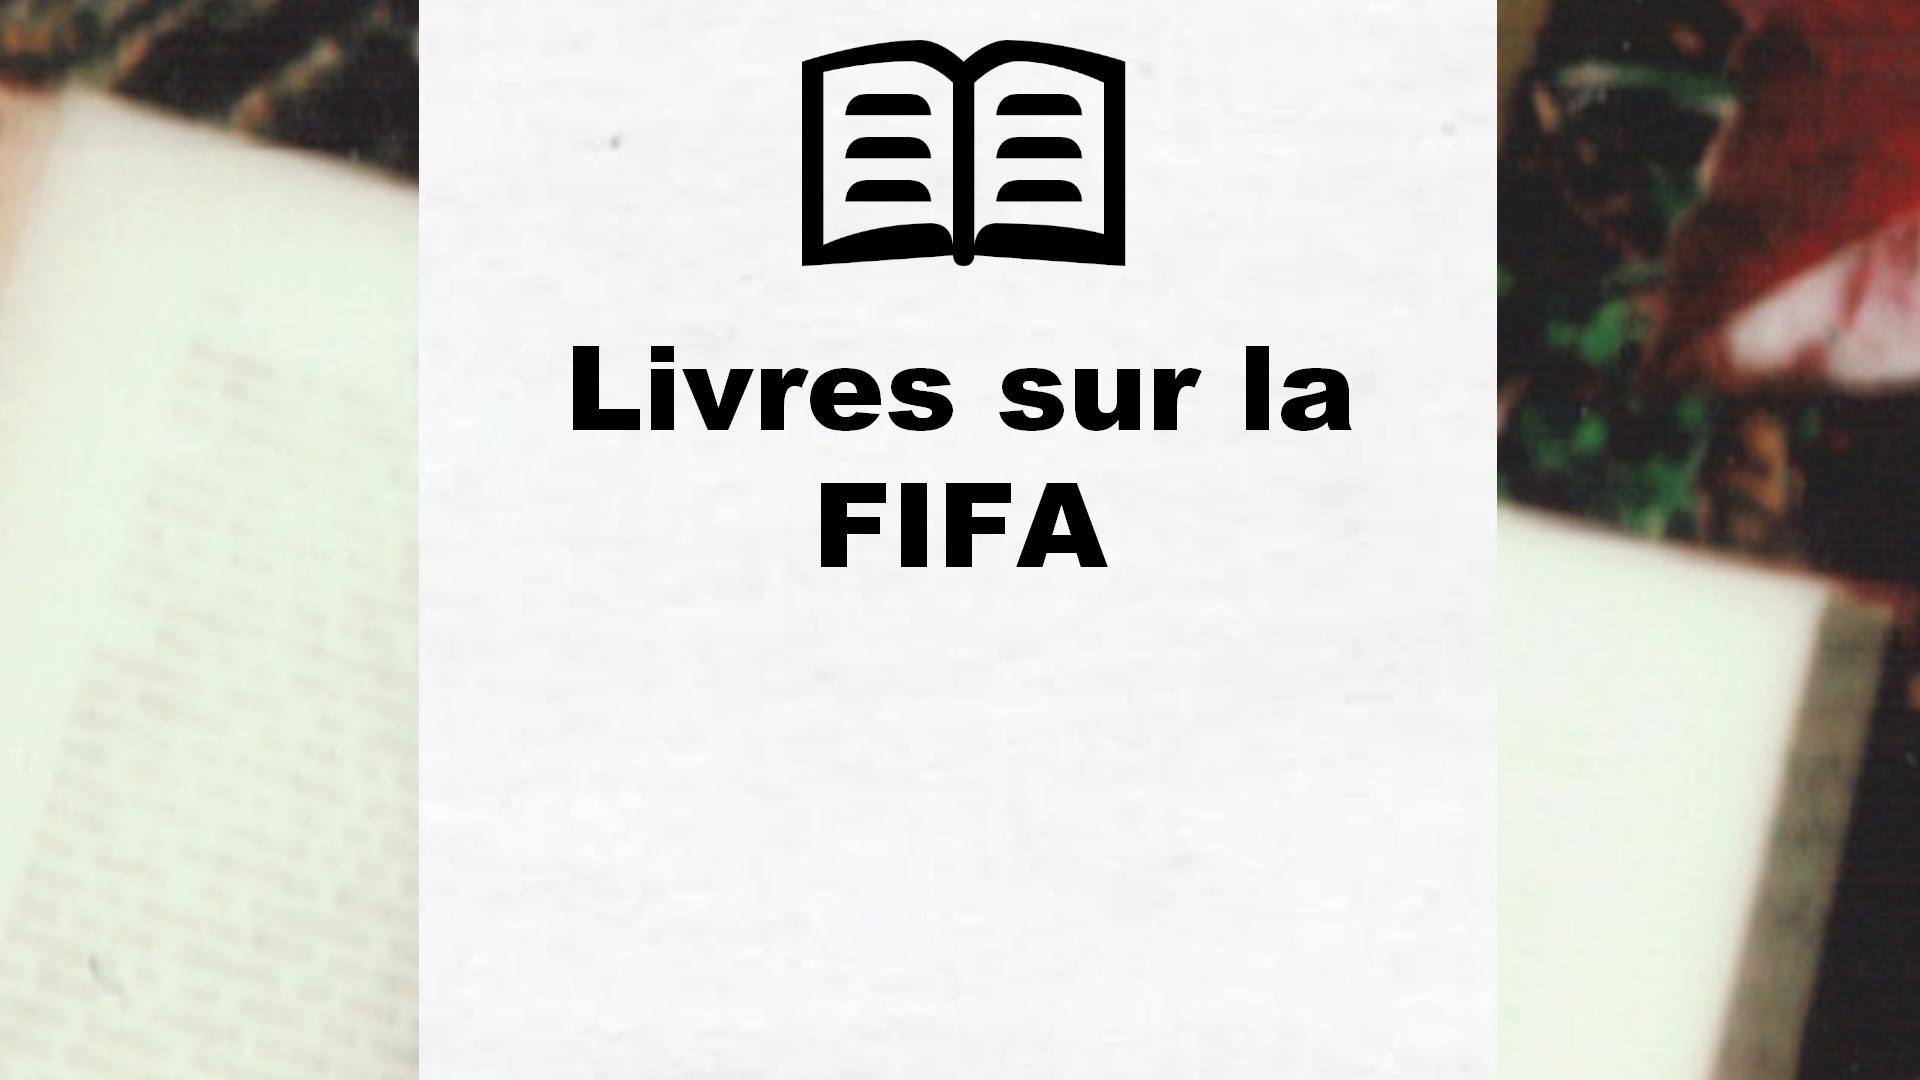 Livres sur la FIFA